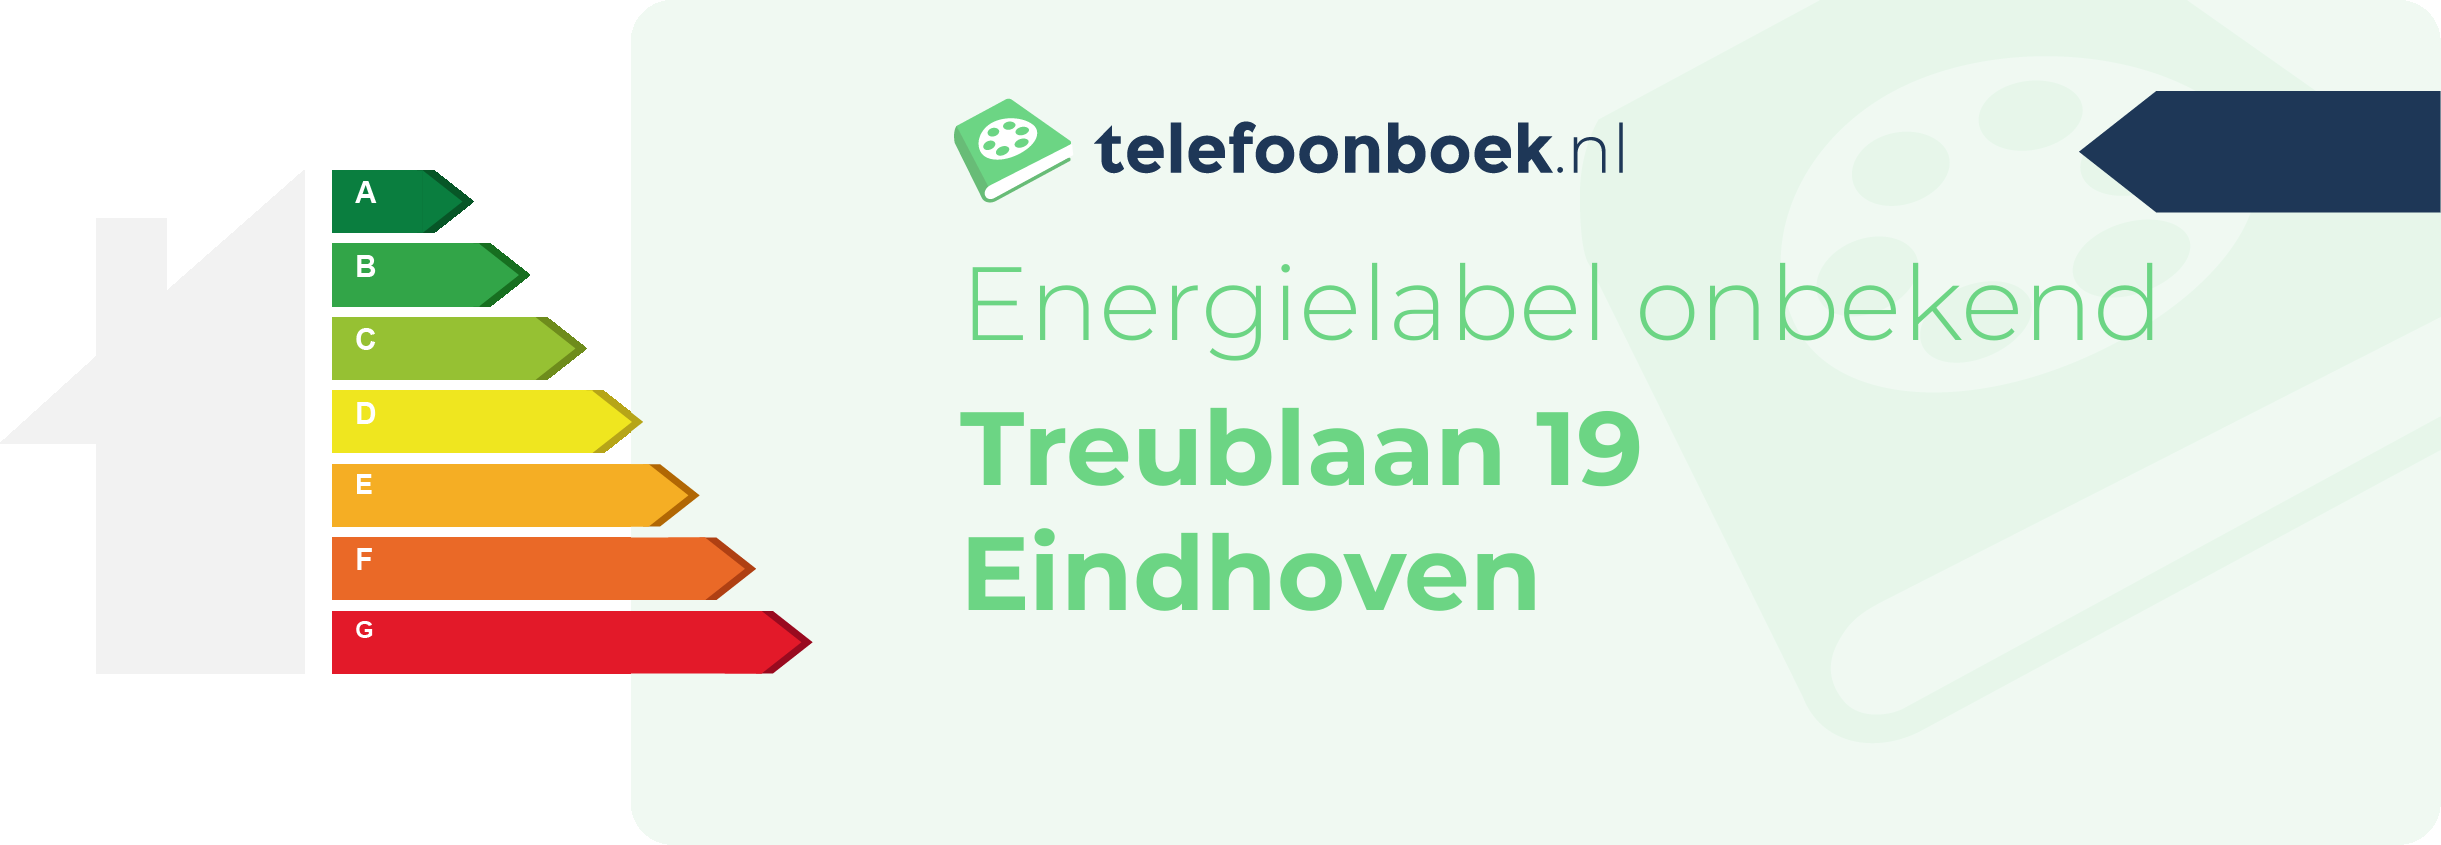 Energielabel Treublaan 19 Eindhoven